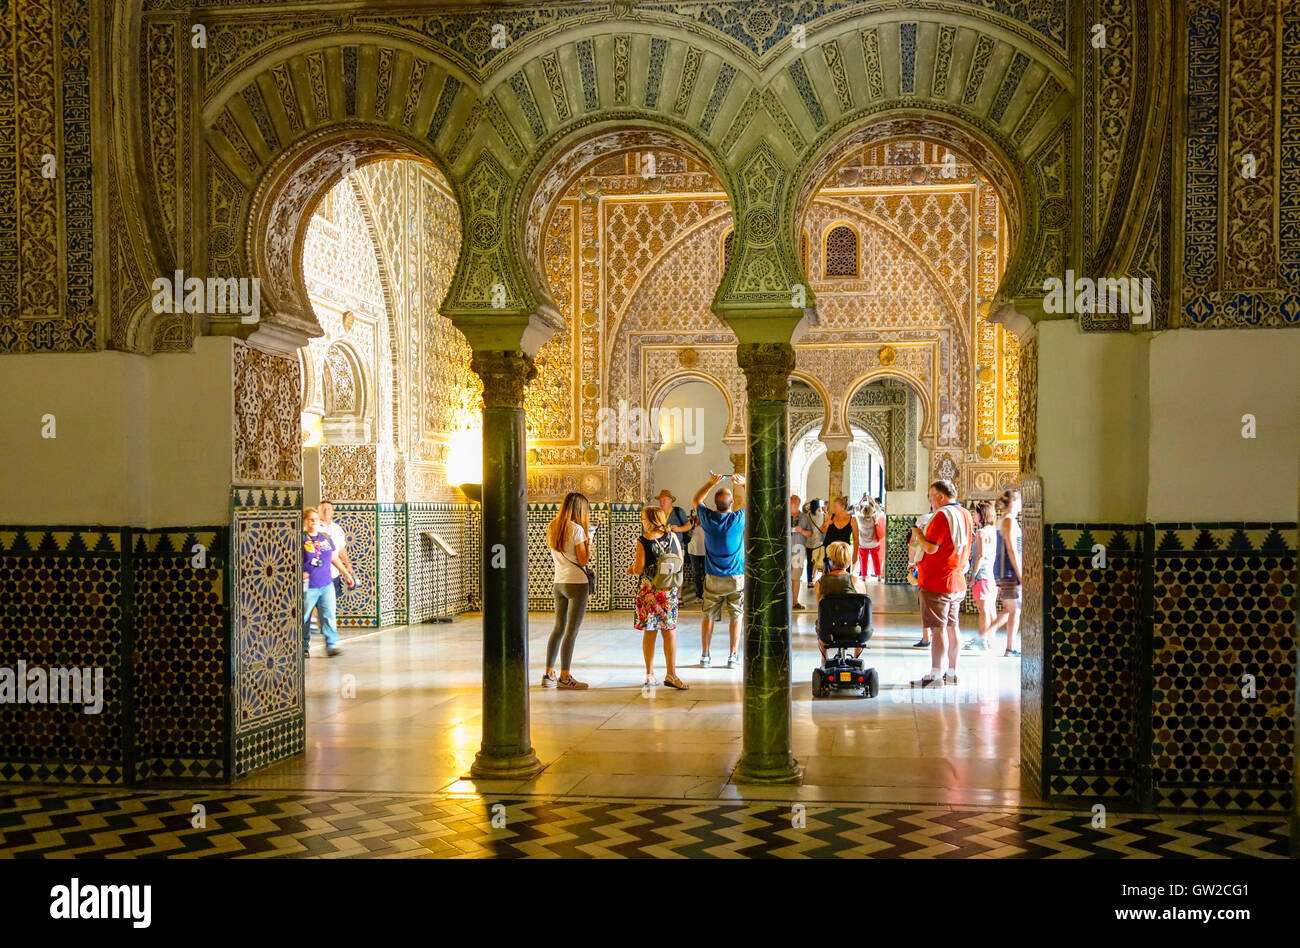 Les arches de style Mudéjar en salle Ambassador, à l'alcazar mauresque, Séville, Andalousie, espagne. Banque D'Images